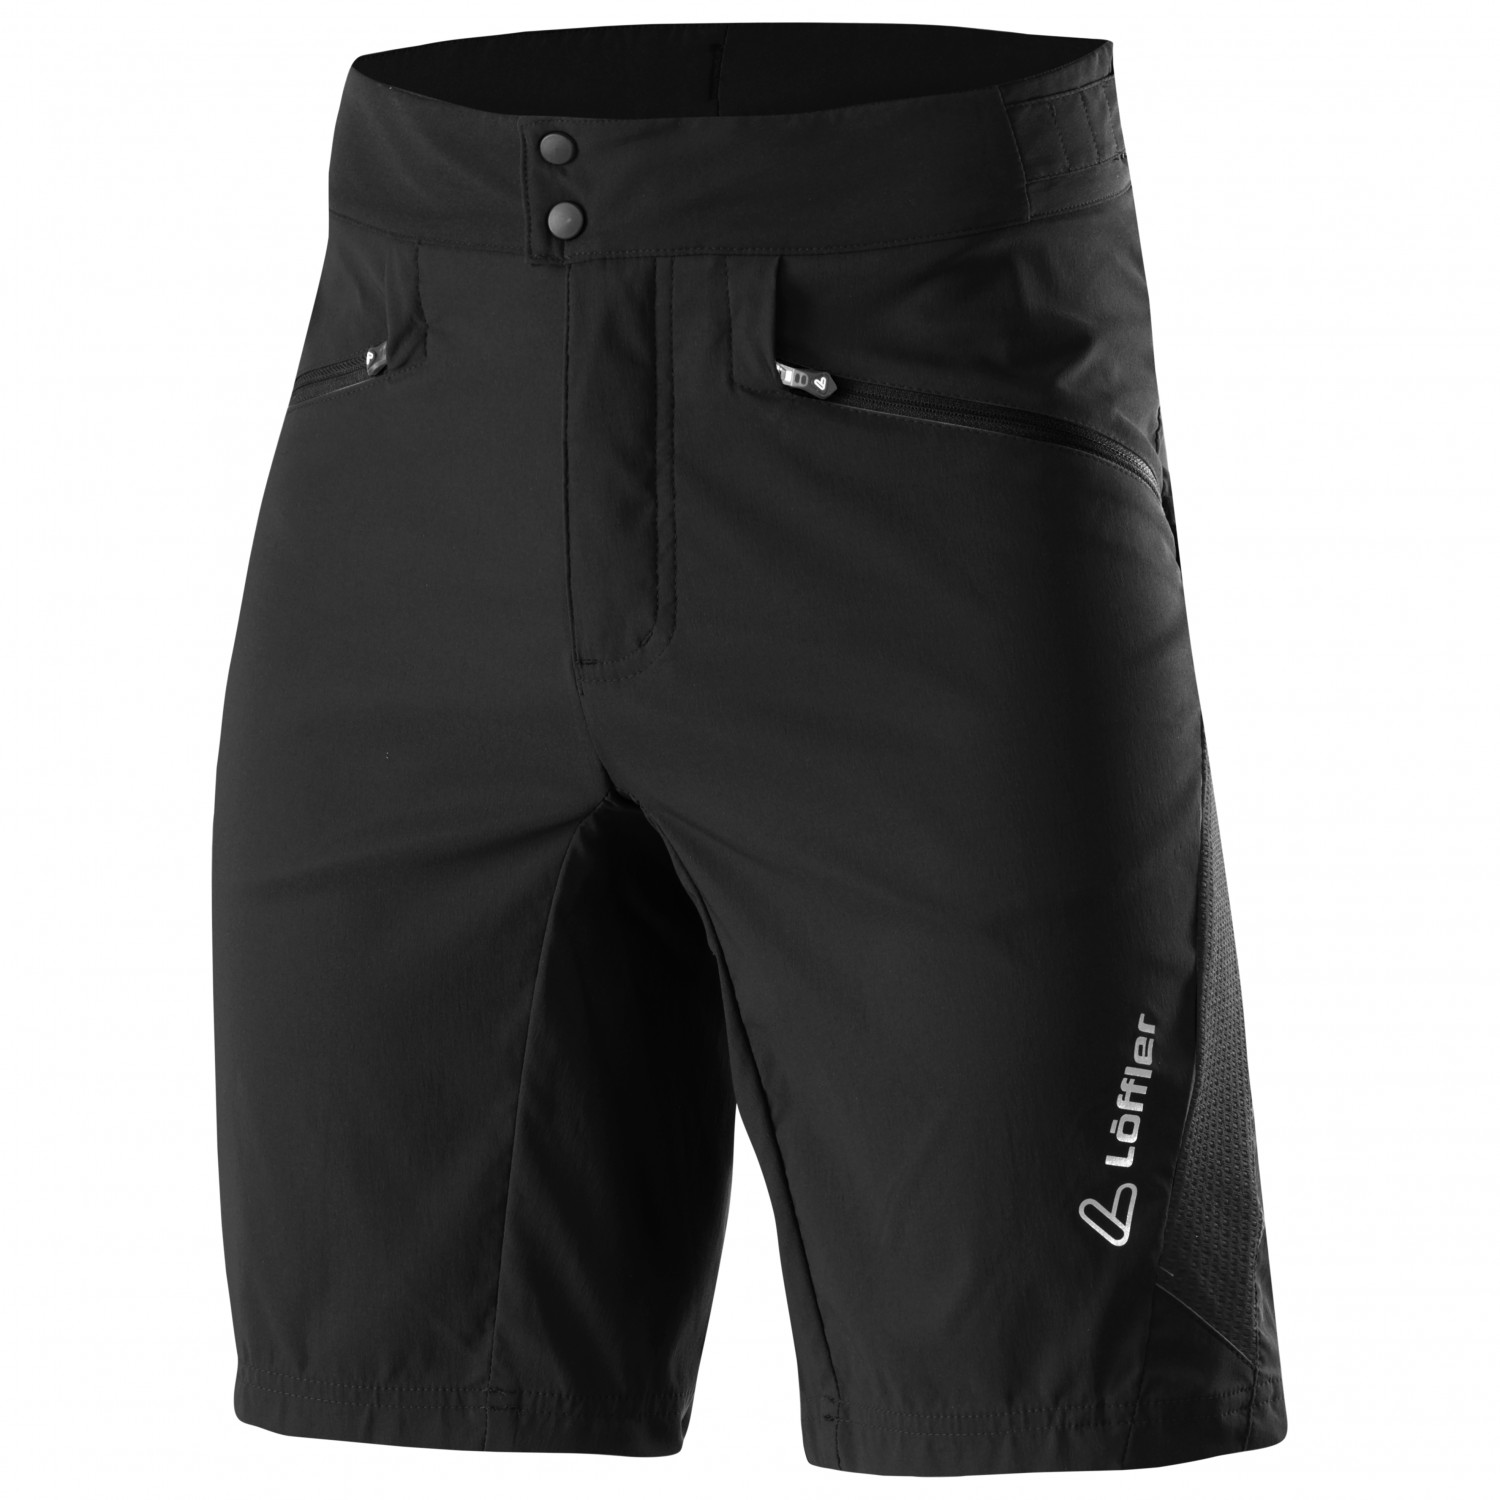 Велосипедные шорты Löffler Bike Shorts Swift Comfort Stretch Light, черный